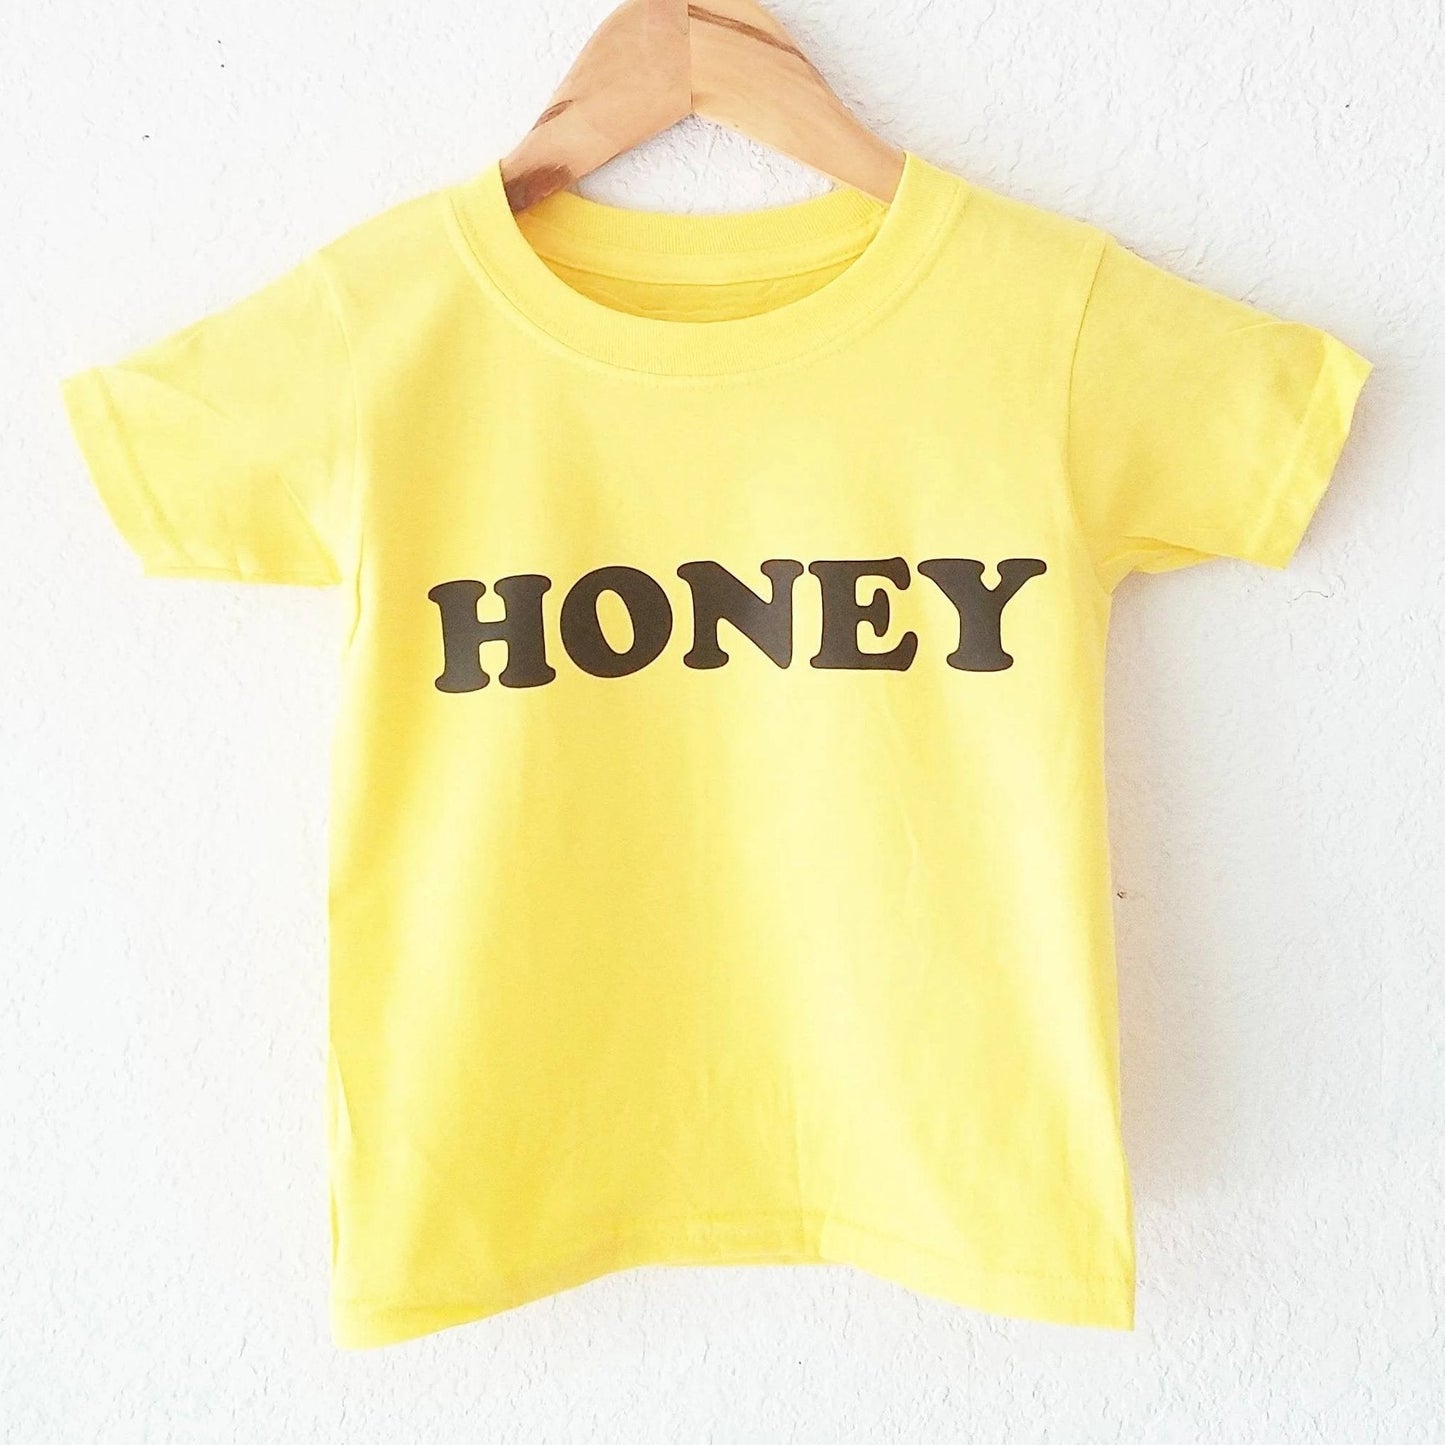 HONEY, Baby Tee, Toddler Tee, Honey Tees, Kid's Tees, Be Kind Tee, Kindness Tshirts, Be Kind Tshirt, Honey Tshirt, Honey Shirt